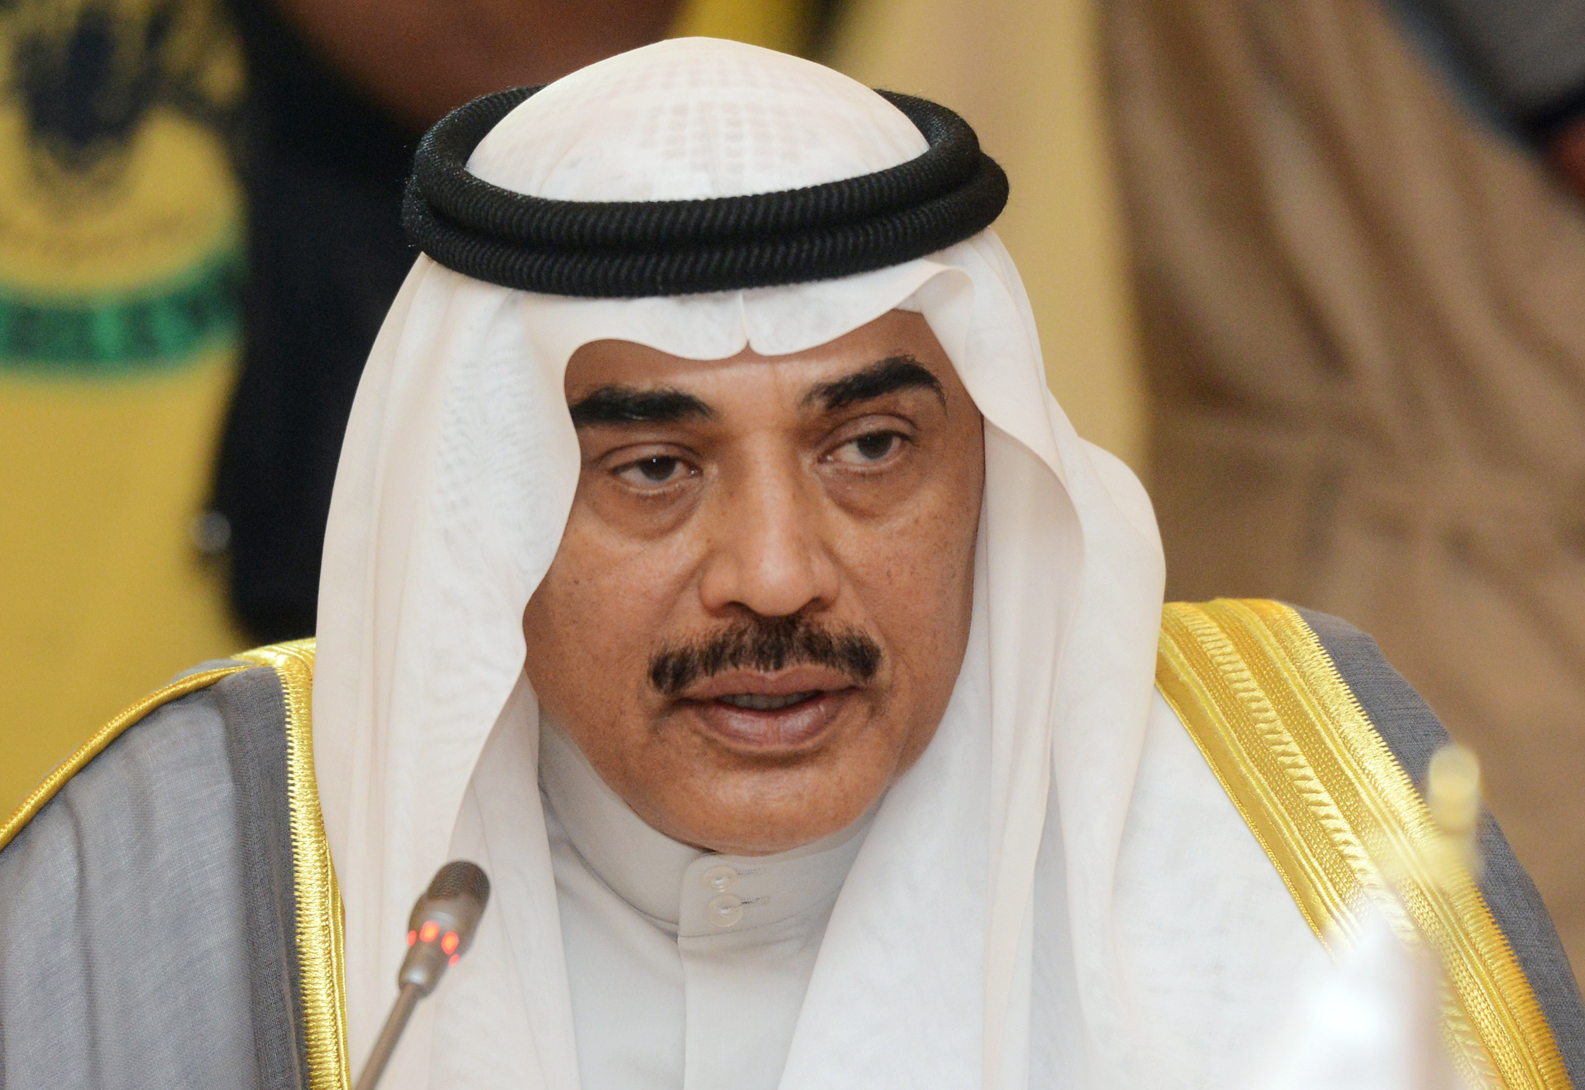 First Deputy Prime Minister and Foreign Minister Sheikh Sabah Al-Khaled Al-Hamad Al-Sabah